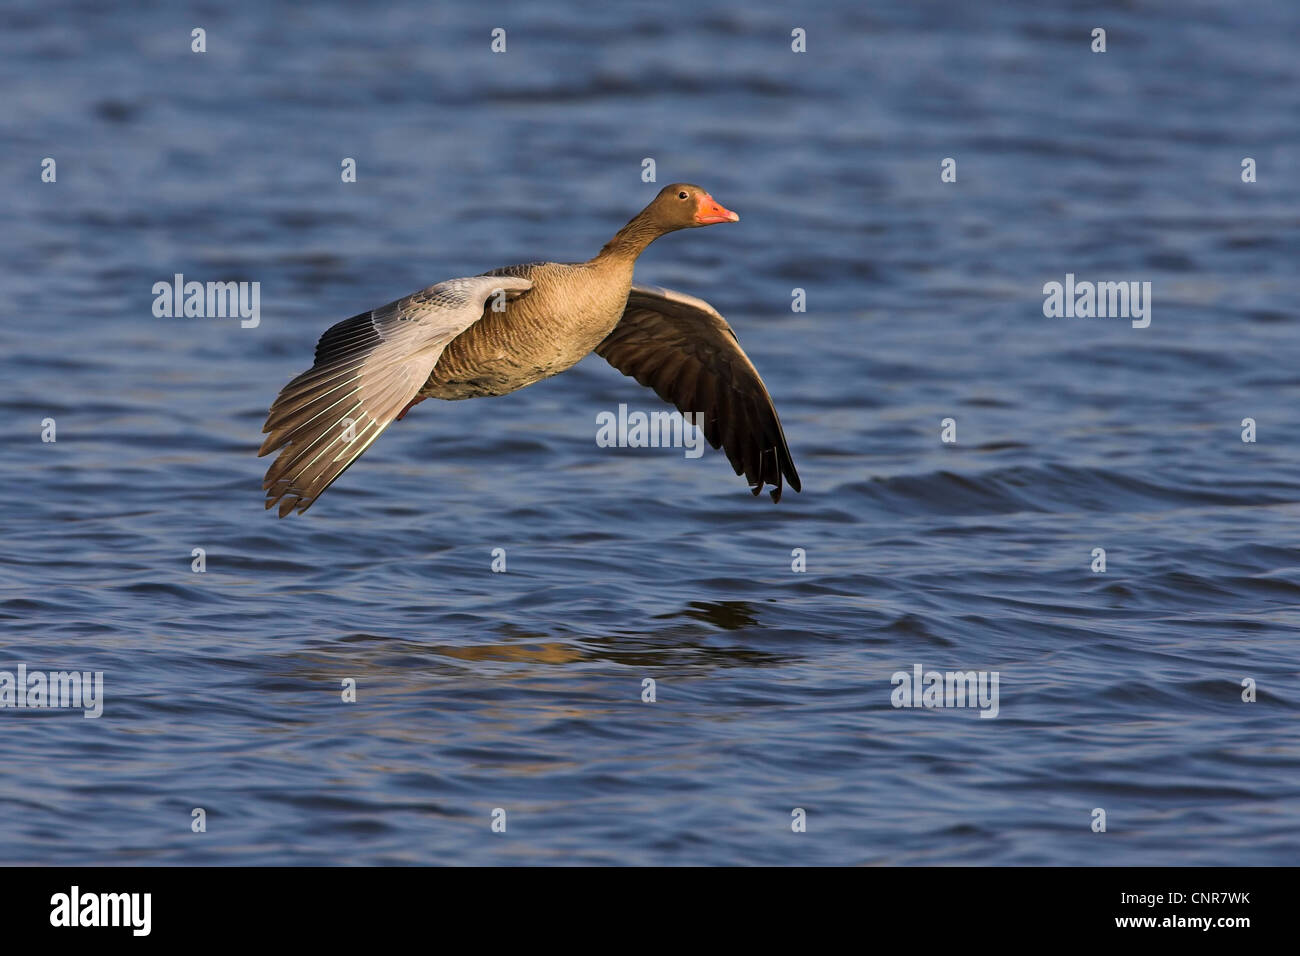 greylag goose (Anser anser), flying over water, Europe Stock Photo